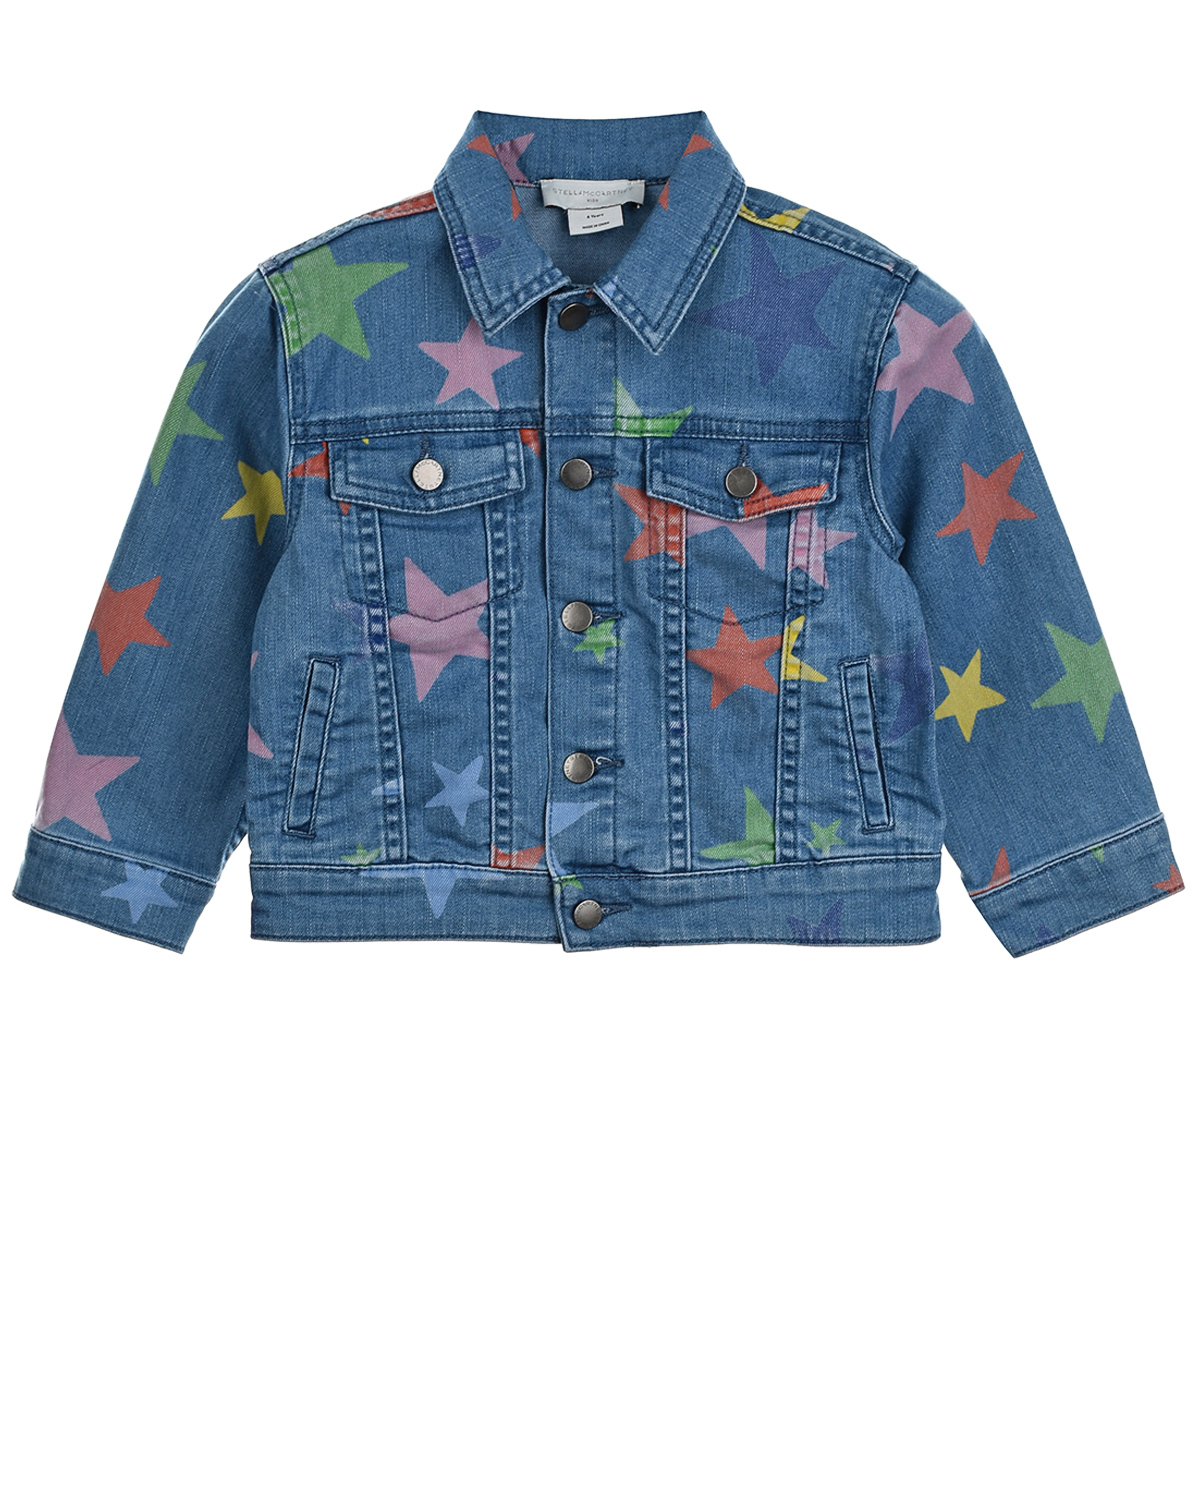 Джинсовая куртка с принтом "звезды" Stella McCartney детская, размер 98, цвет синий